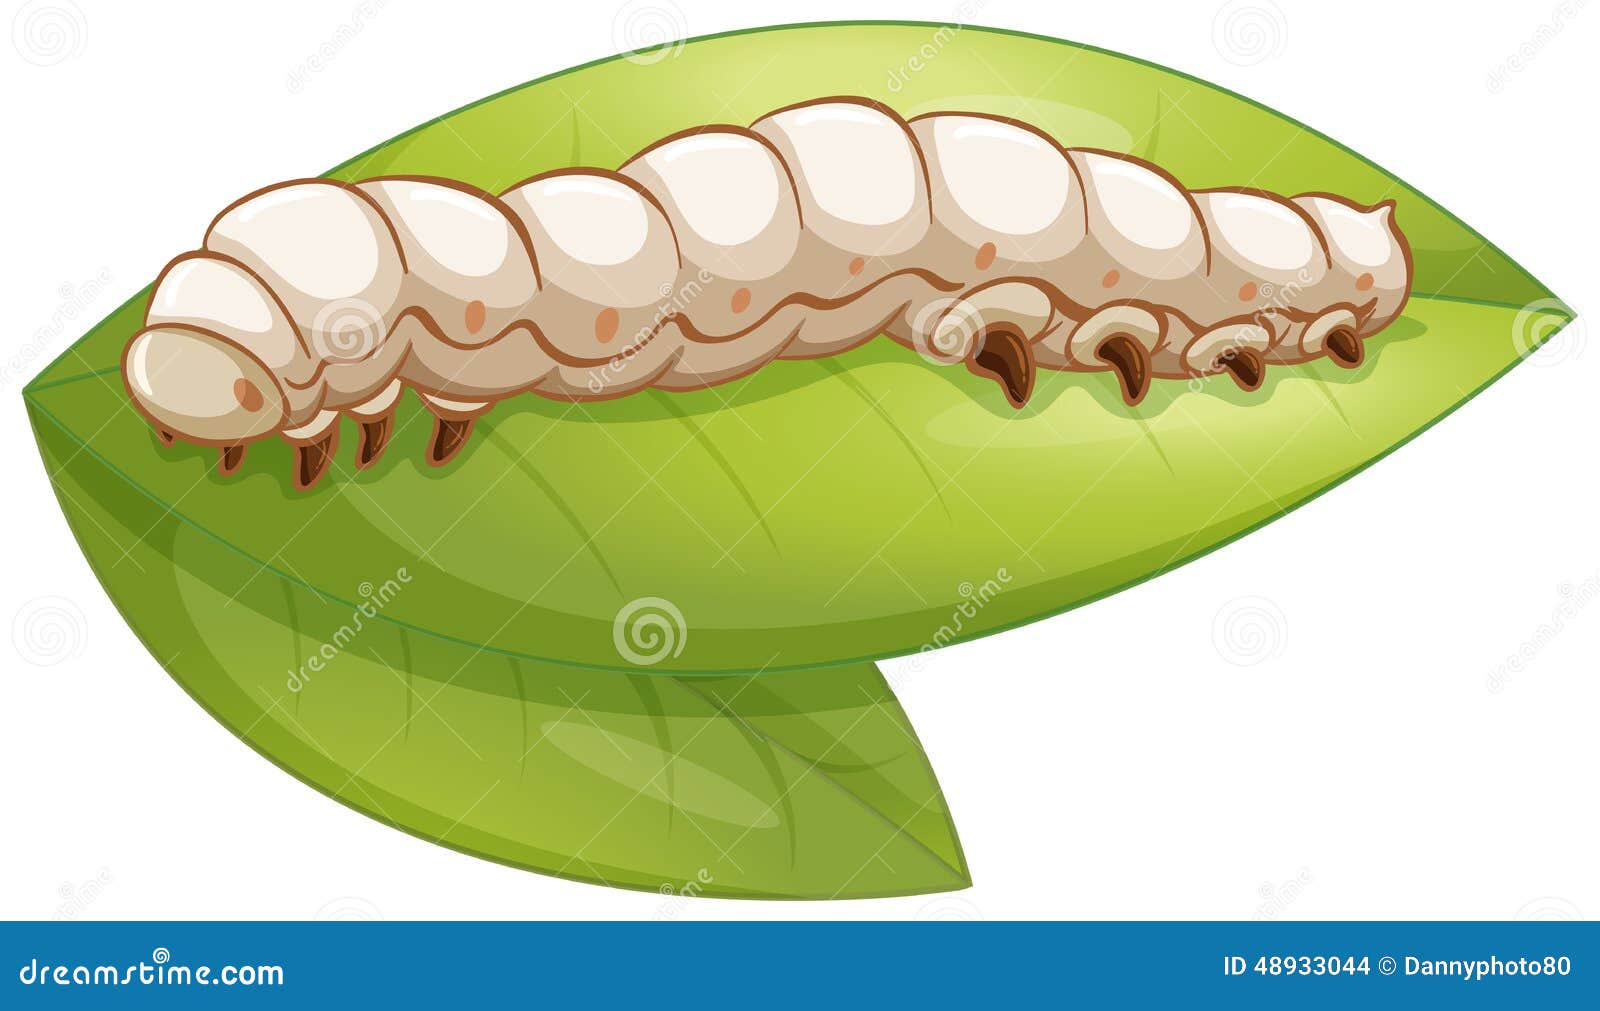 Шелковичный червь иллюстрация